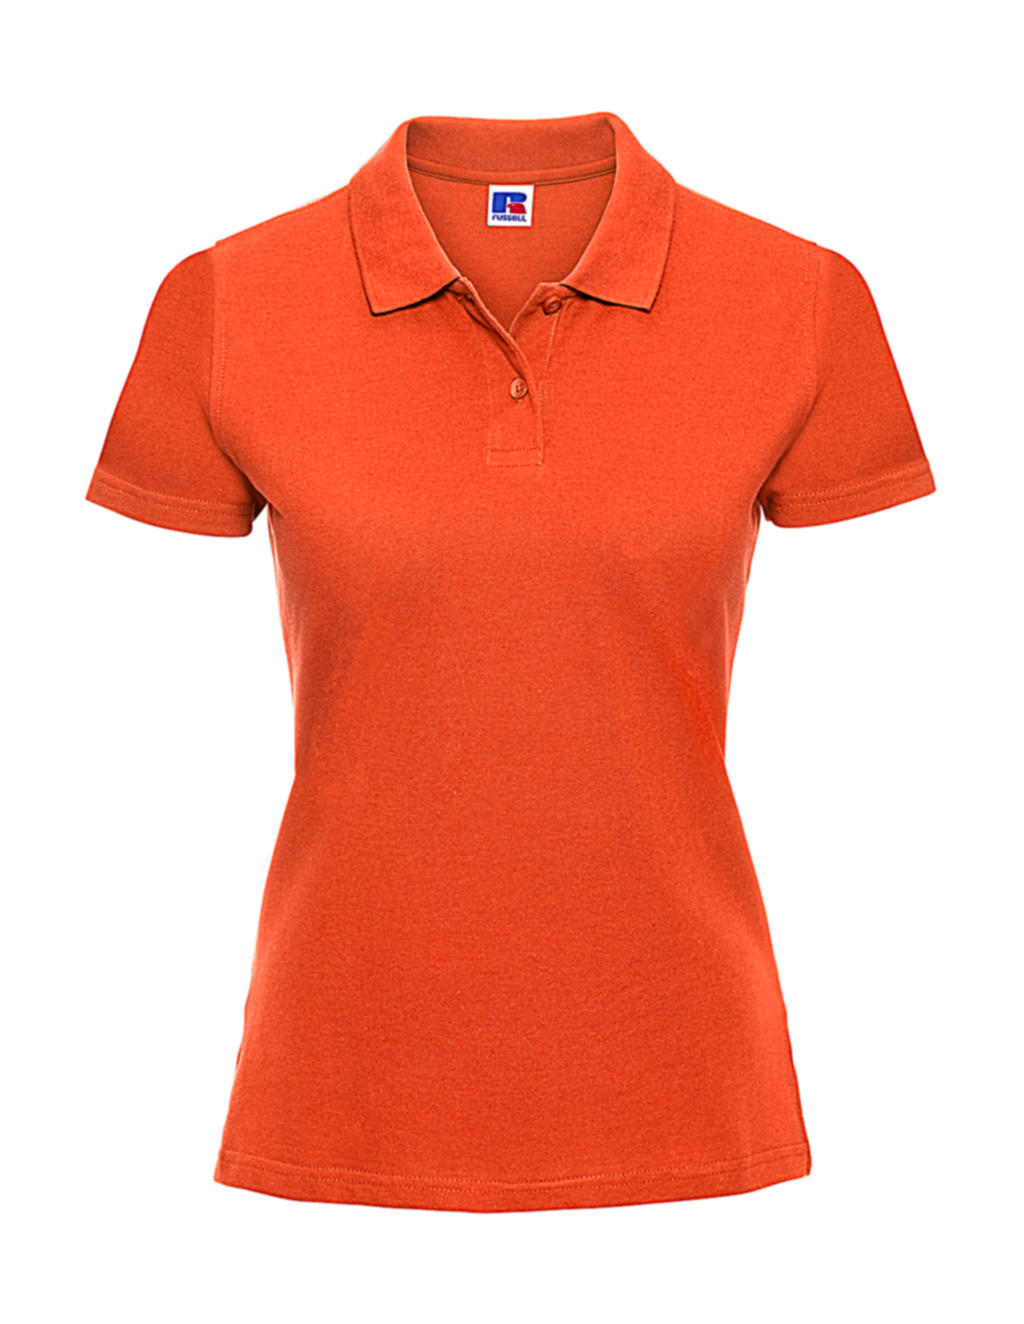  Ladies Classic Cotton Polo in Farbe Orange